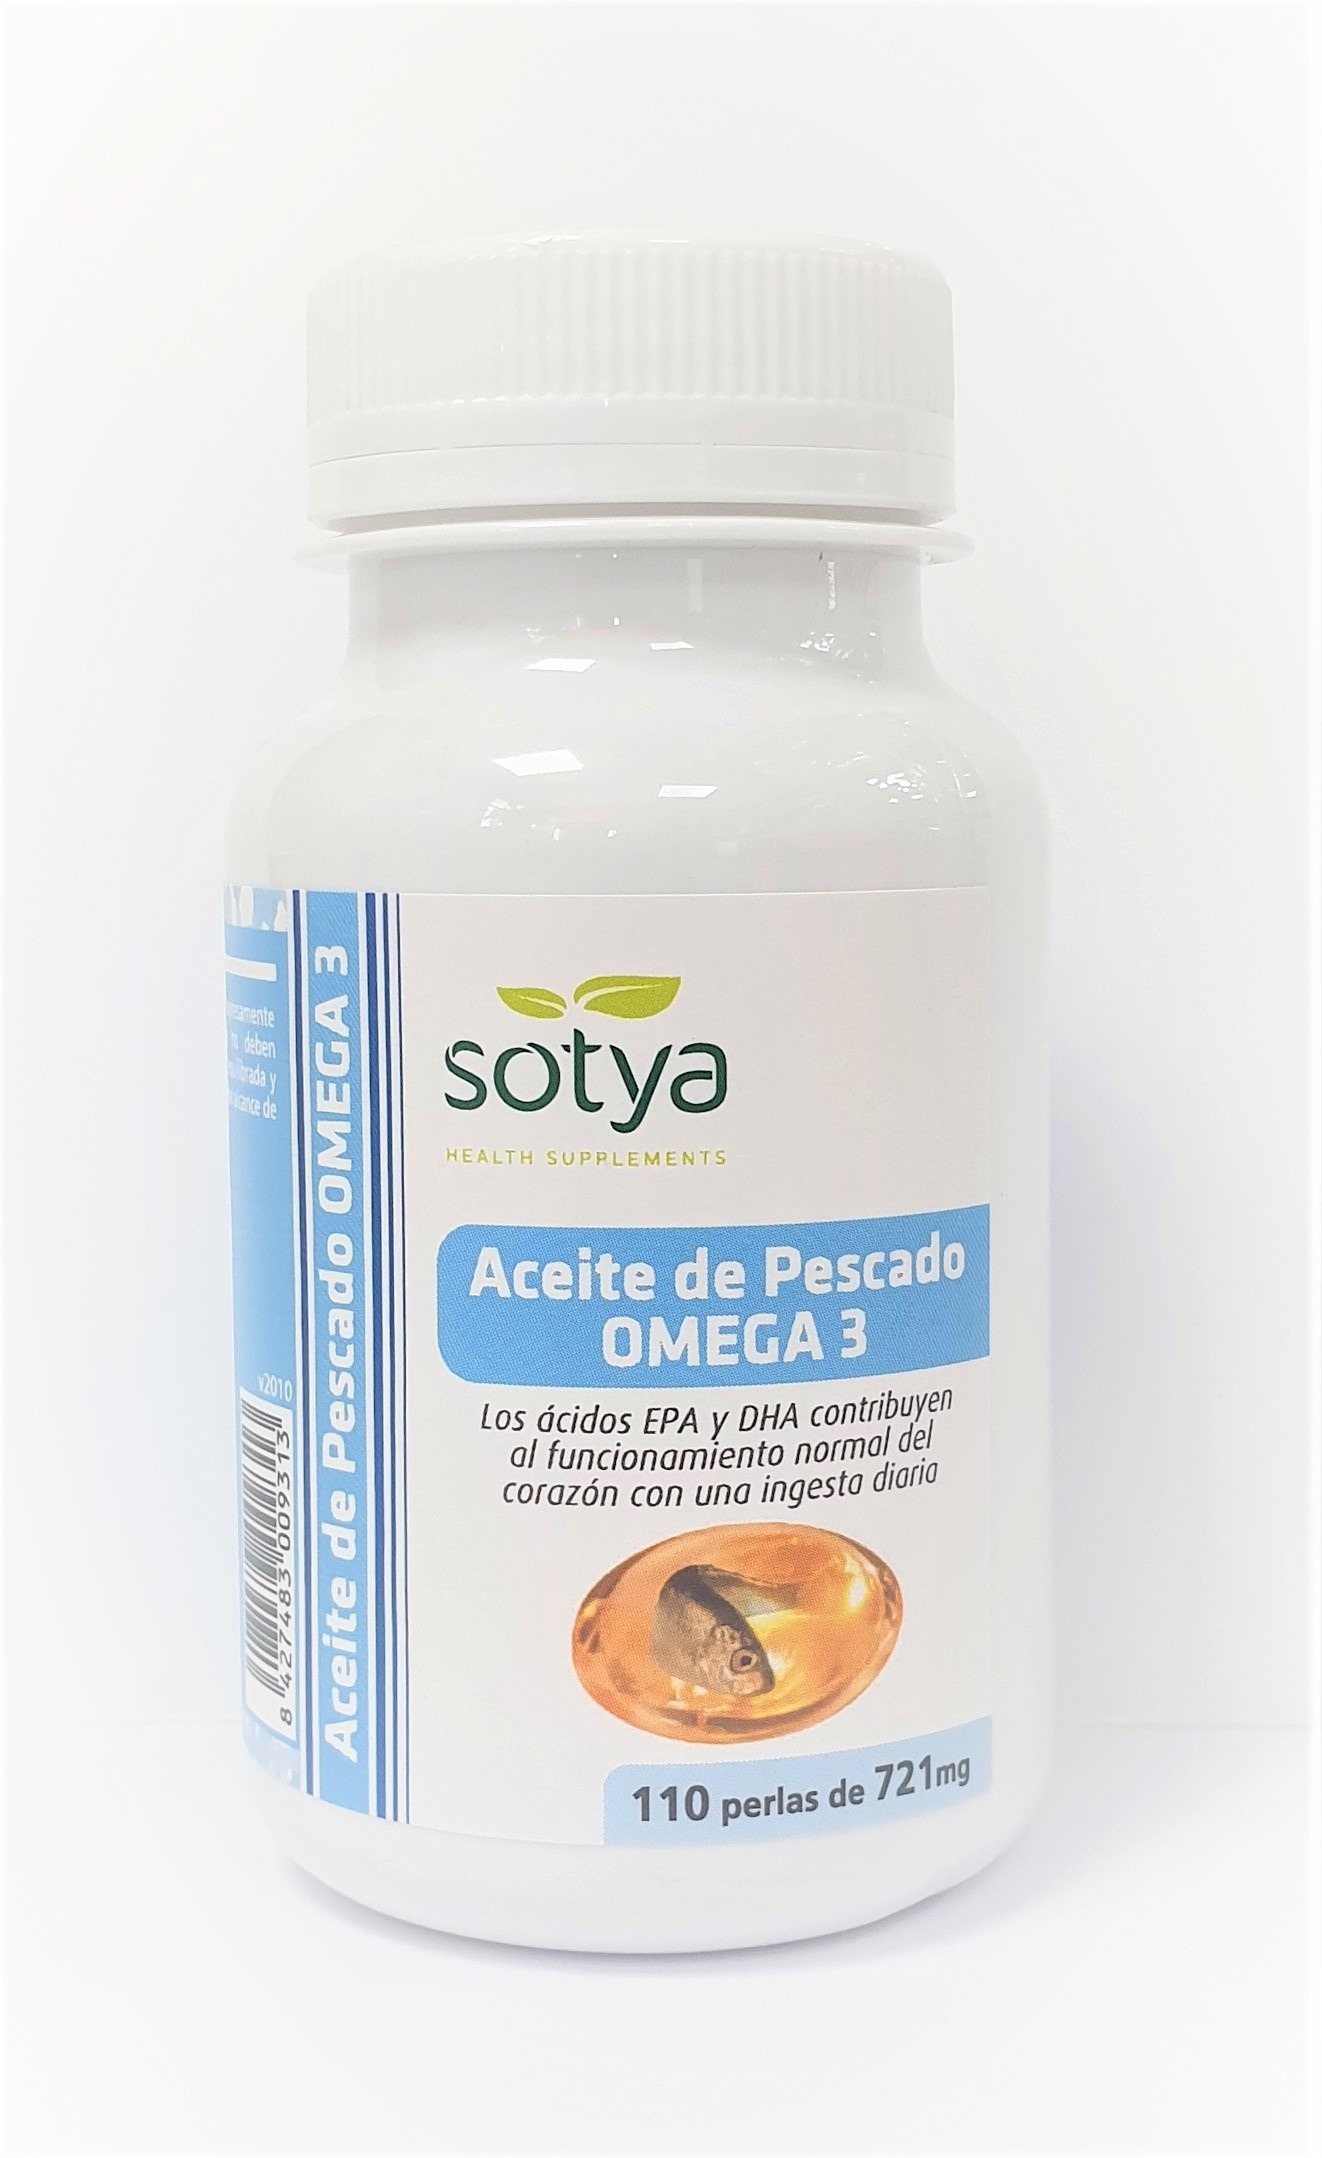 Sotya Aceite de Pescado Omega 3 721 mg, 110 perlas.